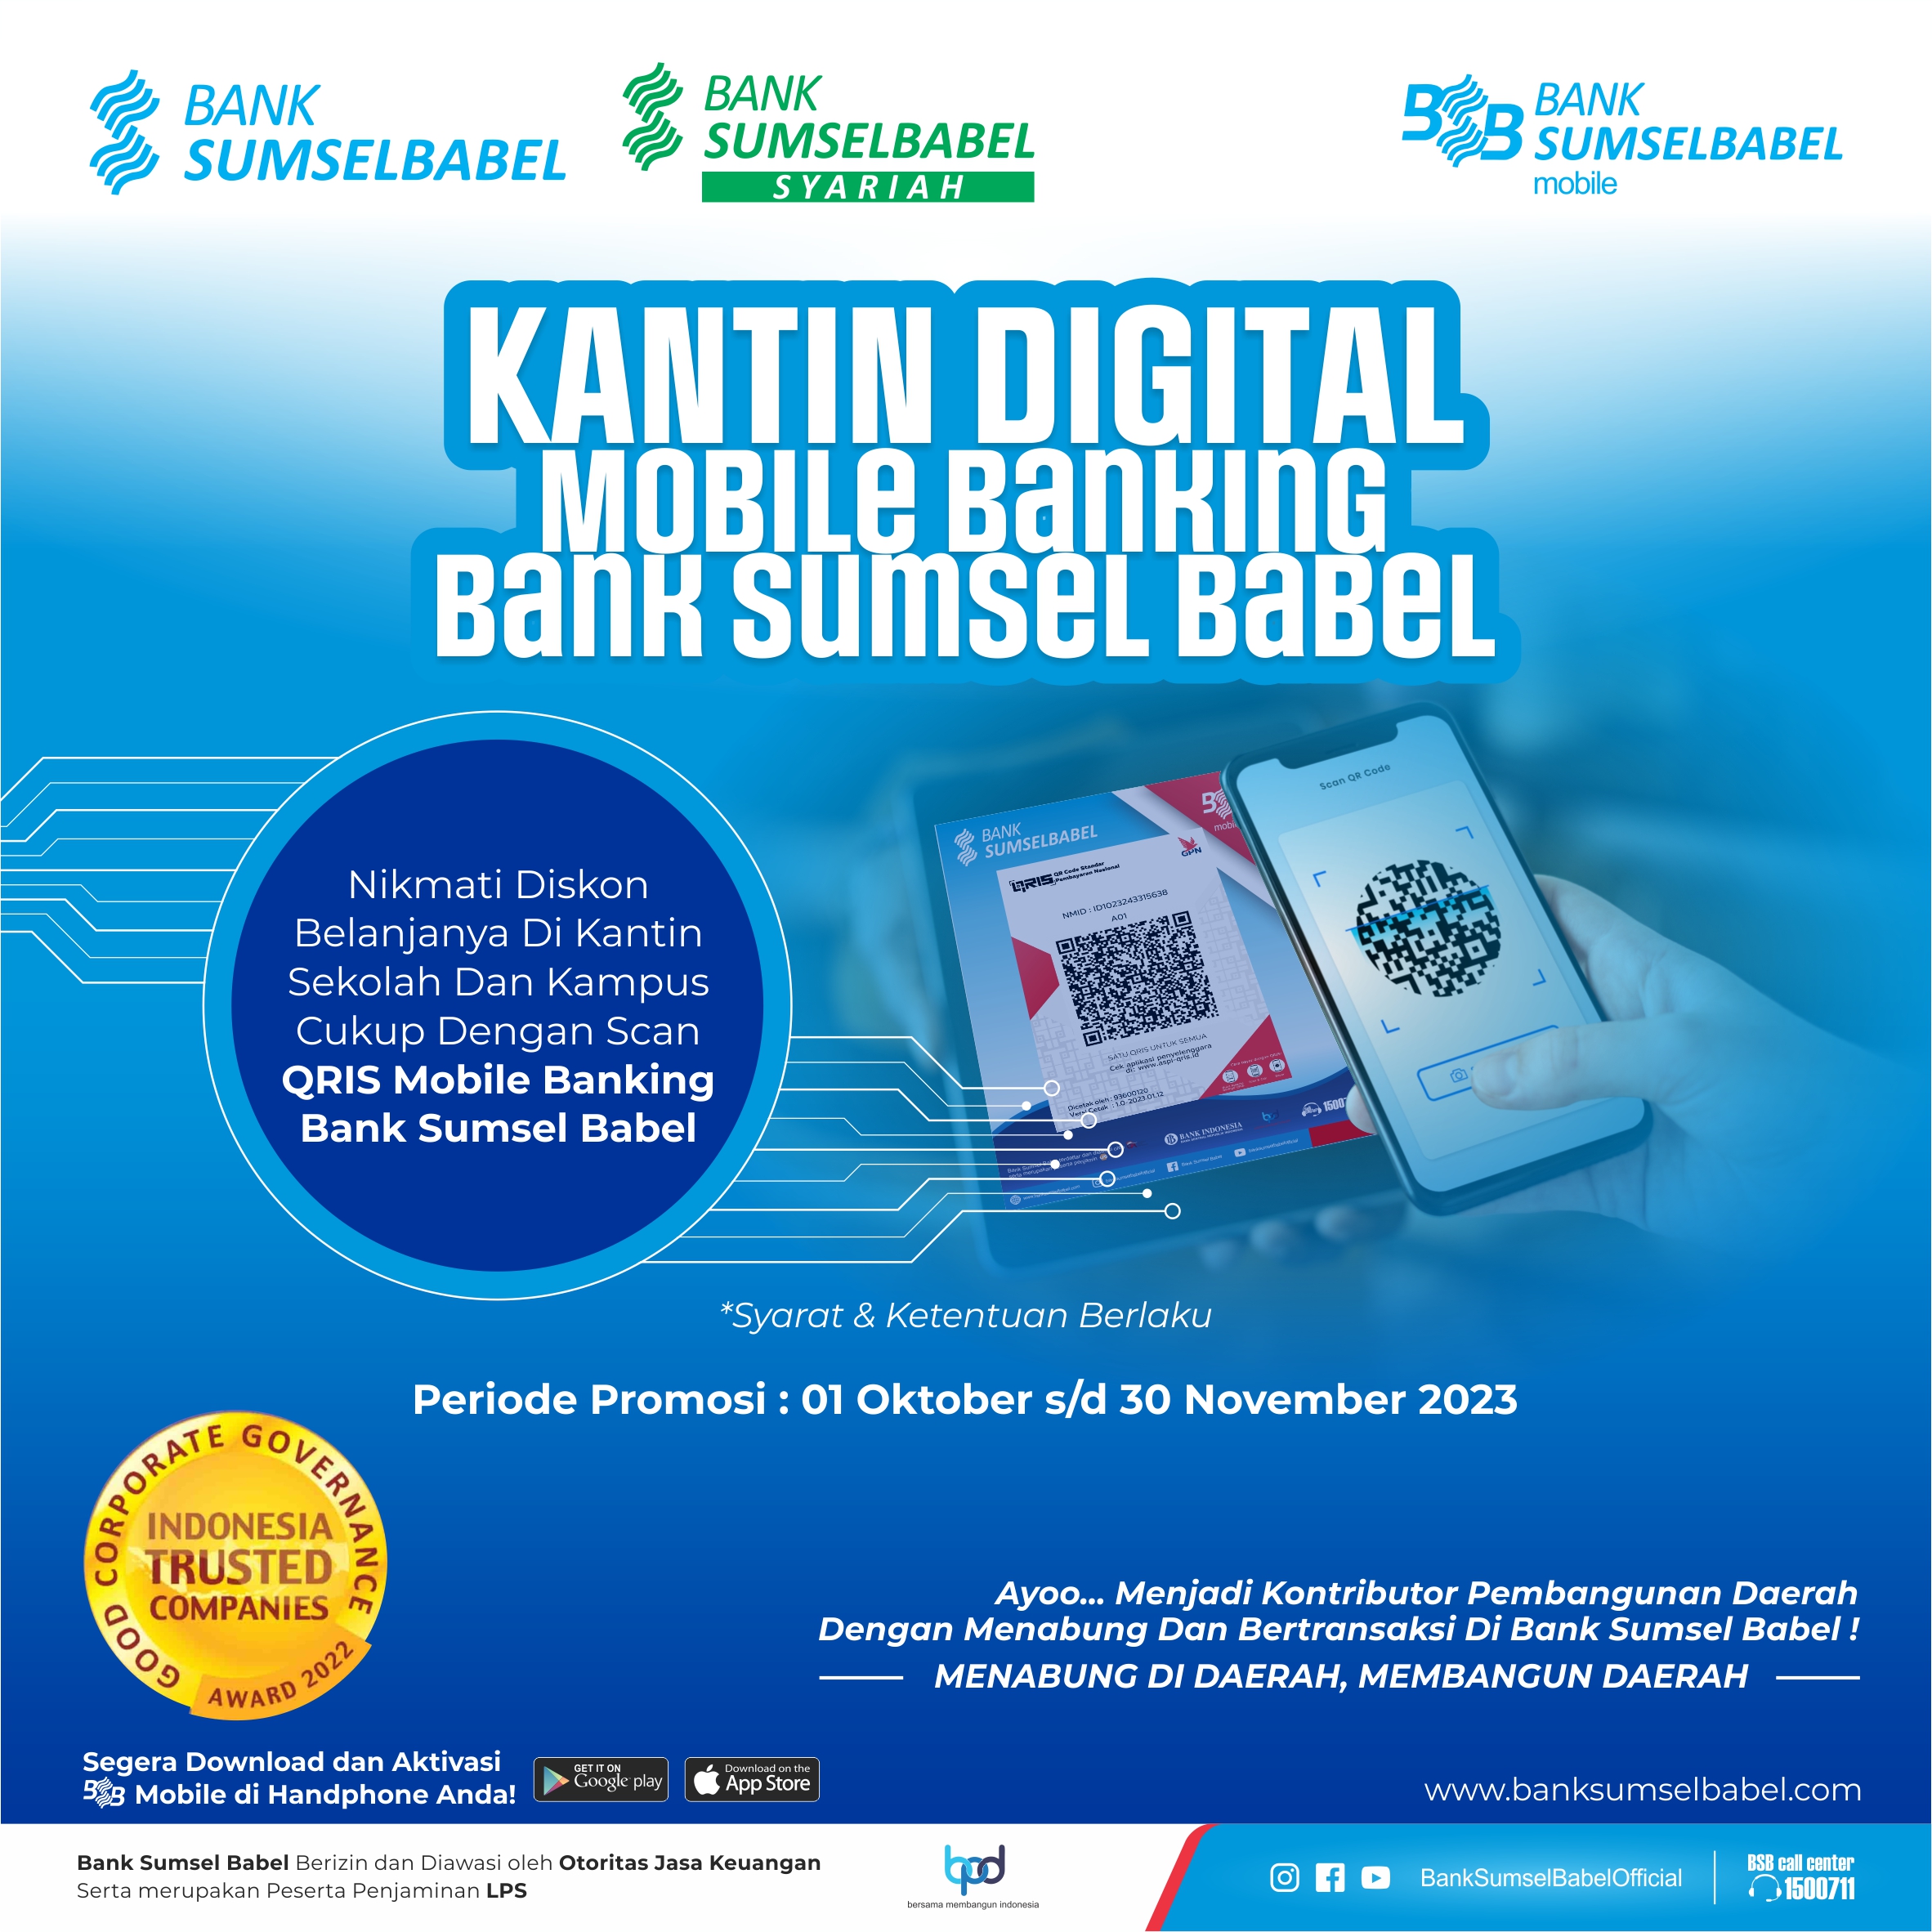 Promo Digital Kantin Mobile banking